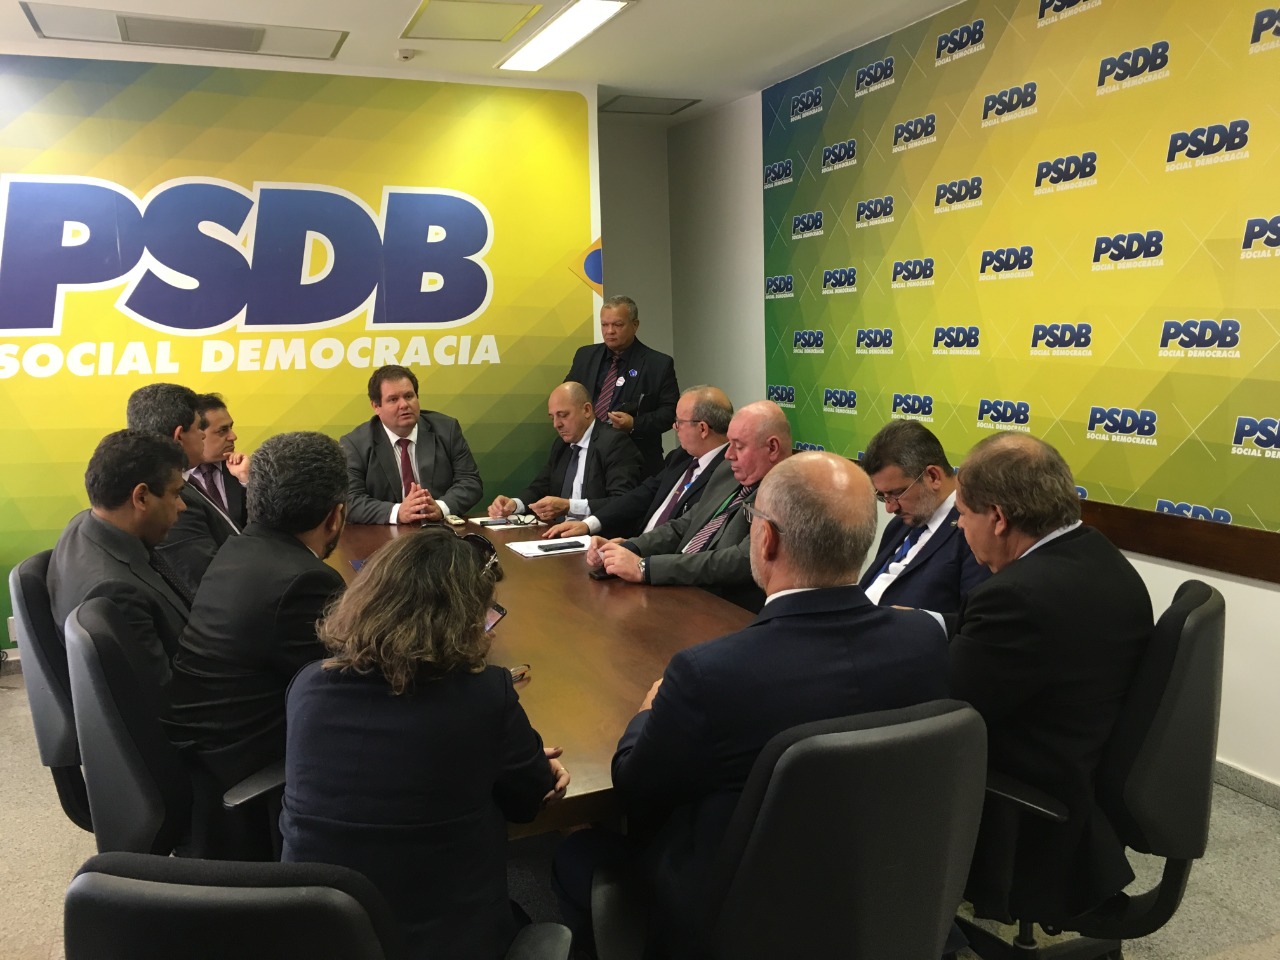 Wanderci Polaquini, presidente do Sindafep, conduz os debates no Senado Federal no primeiro dia de reuniões com demais entidades de todas as esferas do fisco no Brasil.